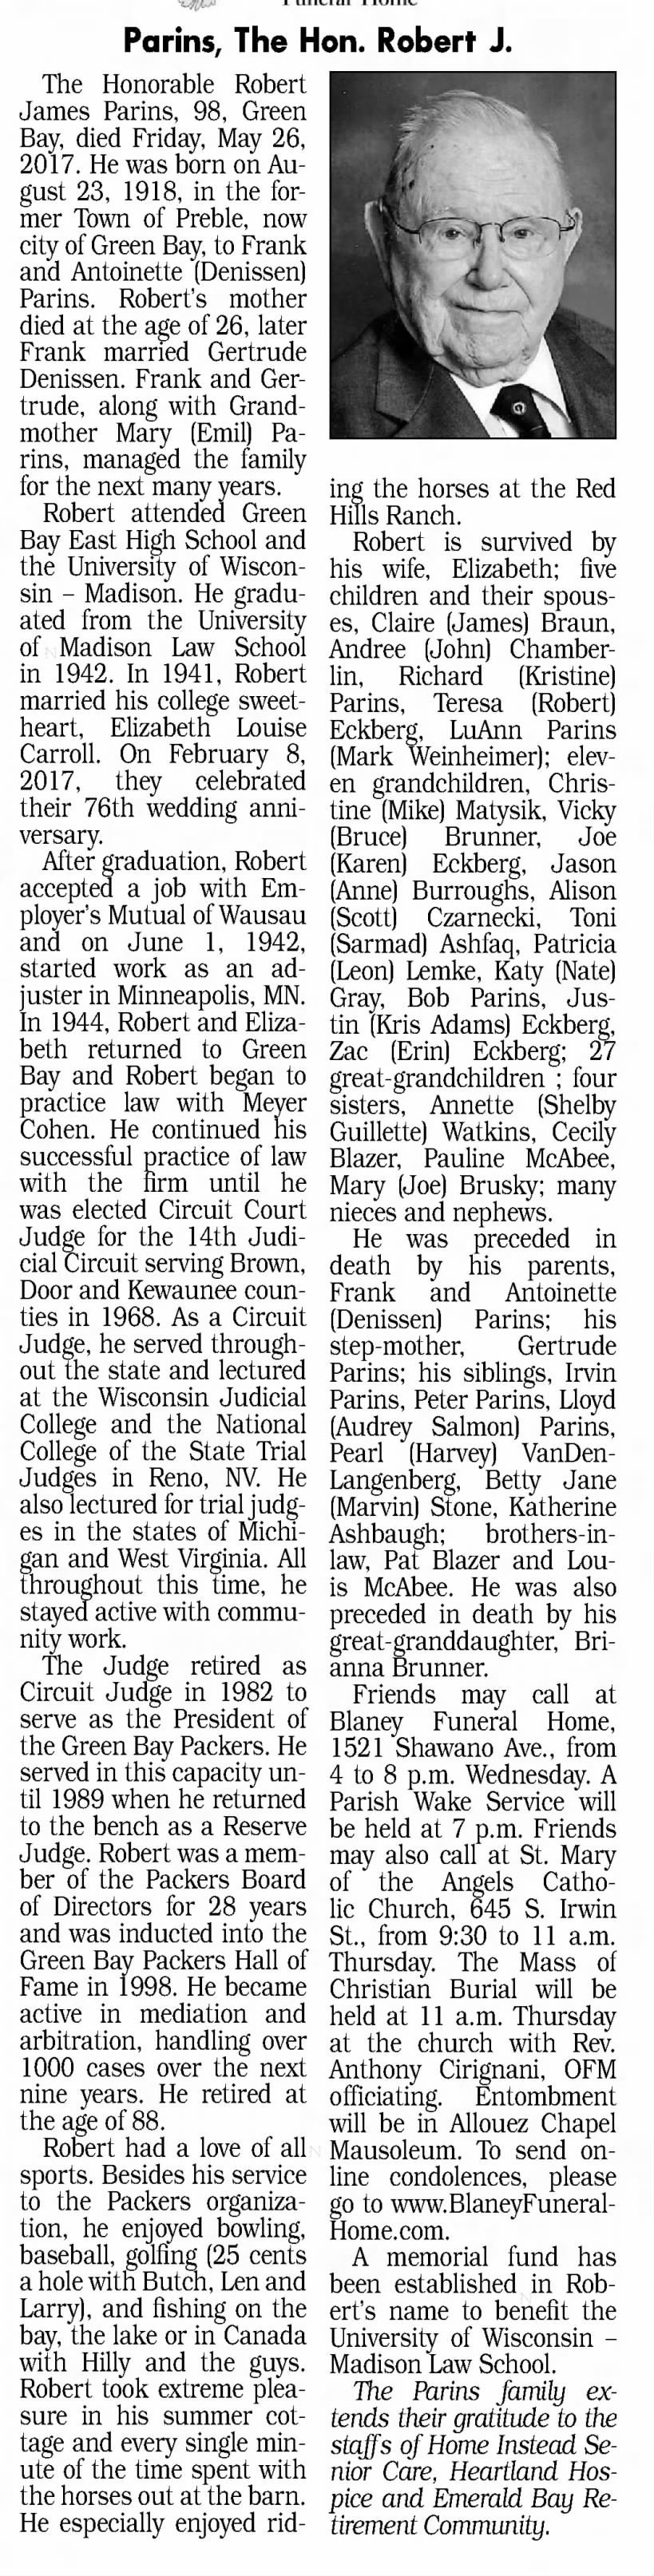 Obituary for Robert James Parins